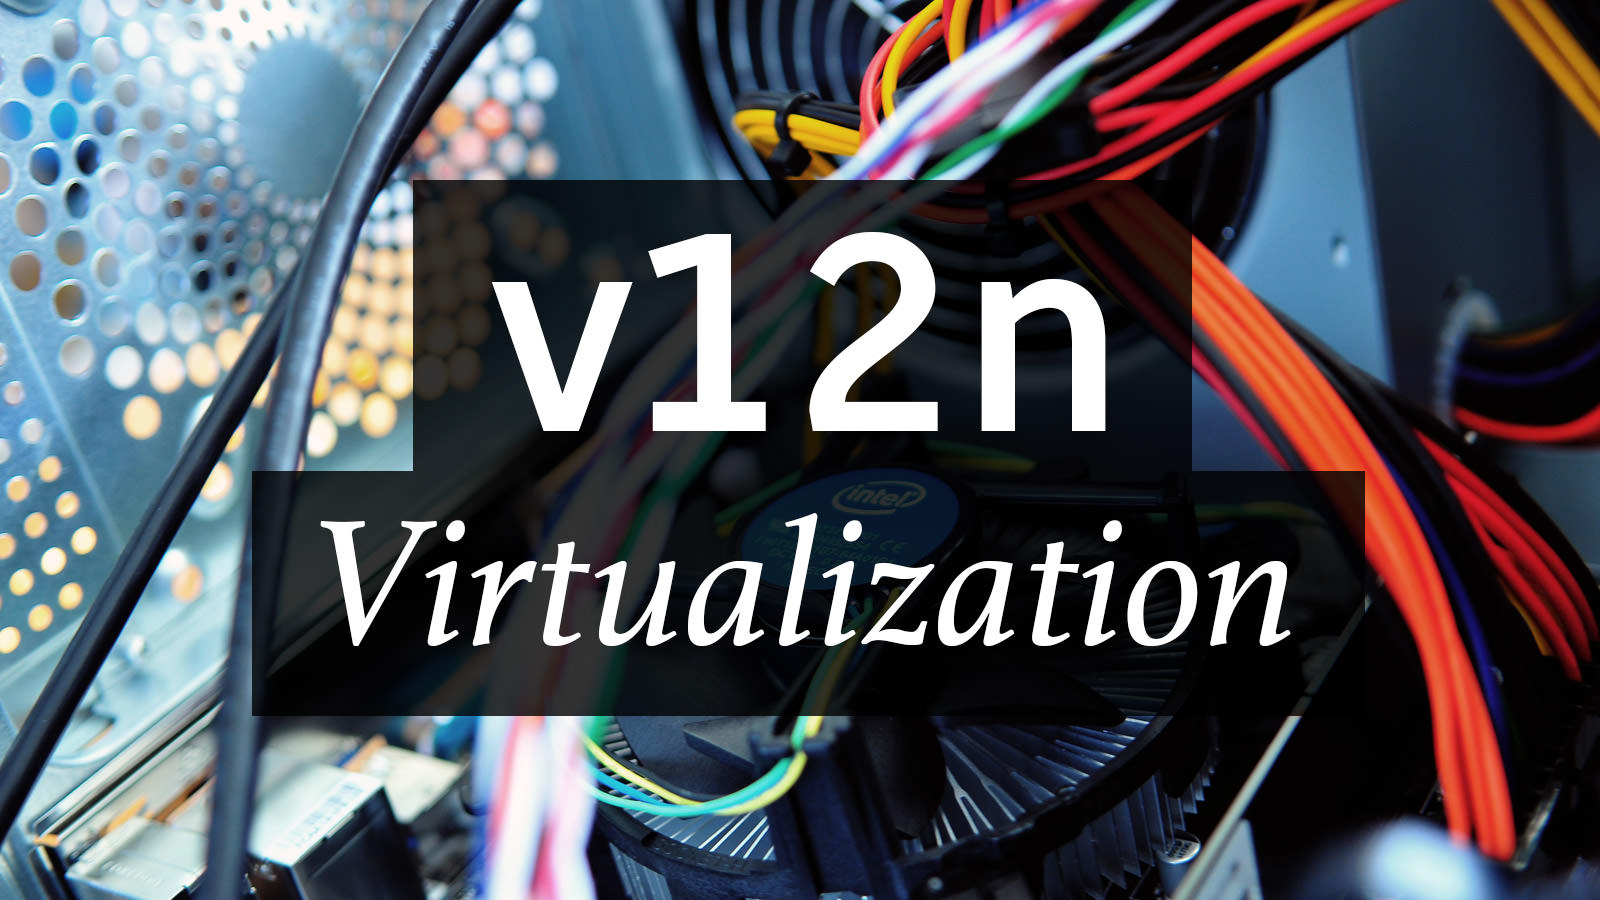 Numeronym for Virtualization